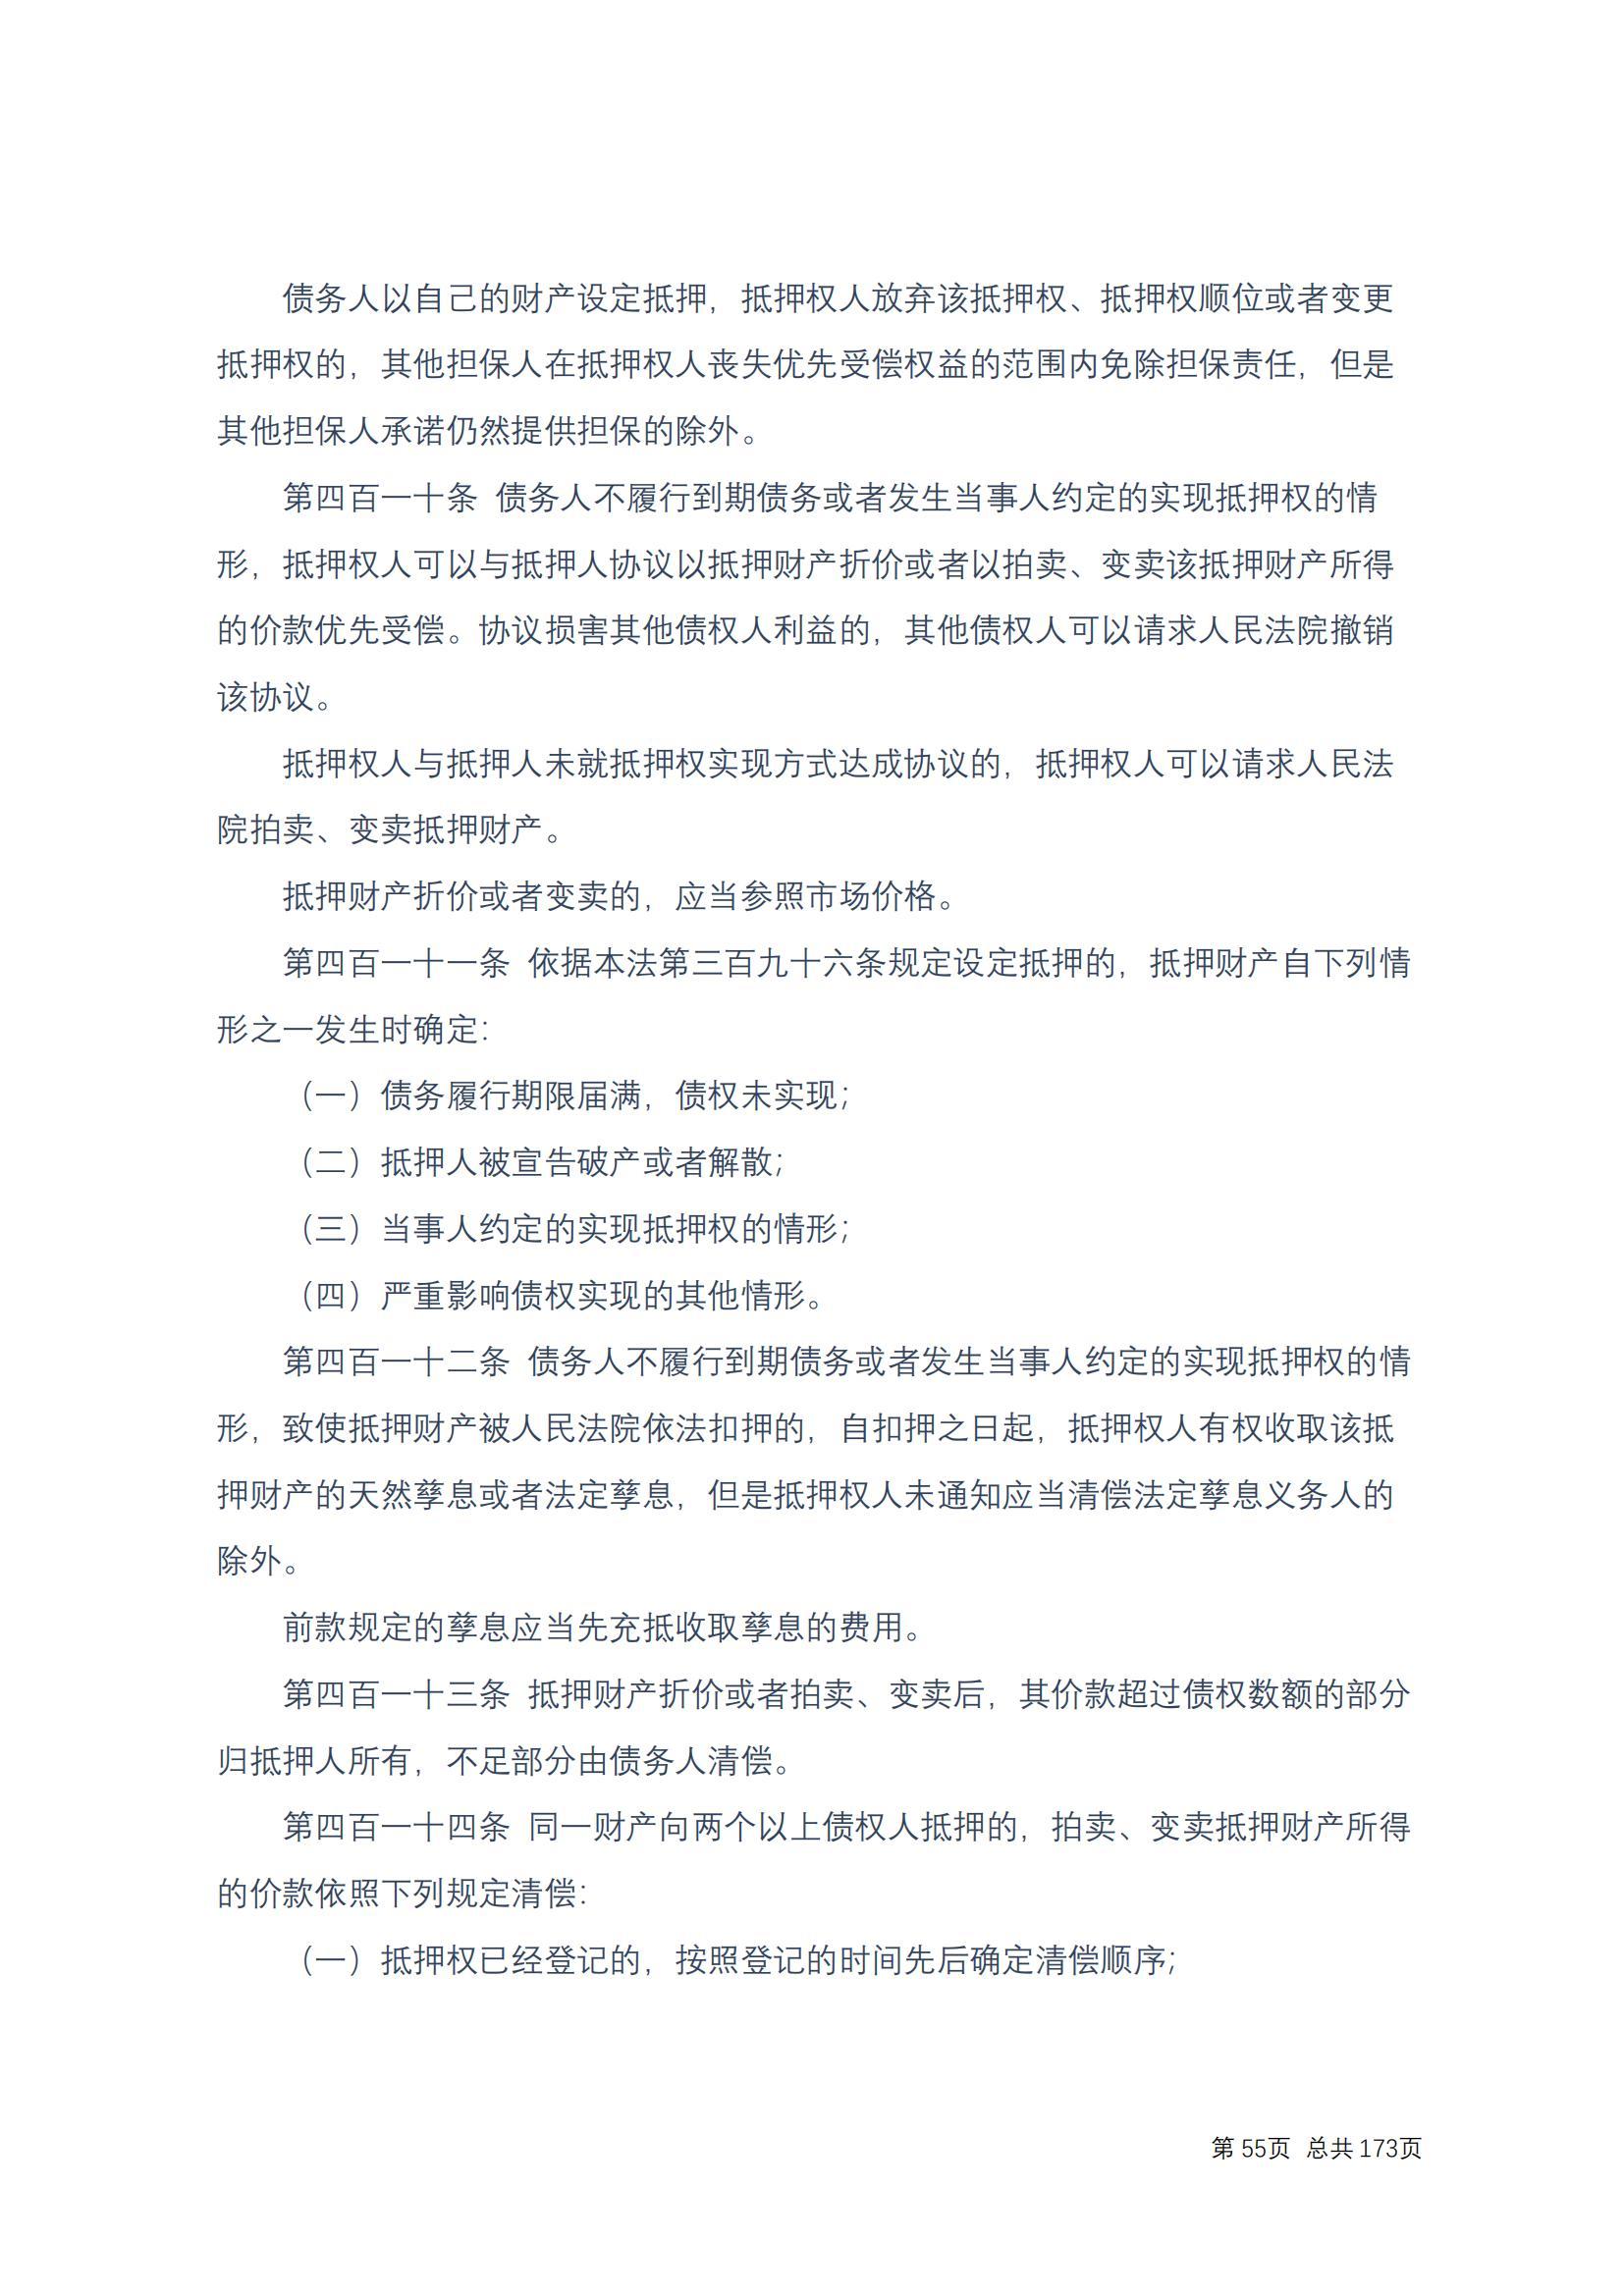 中华人民共和国民法典 修改过_54